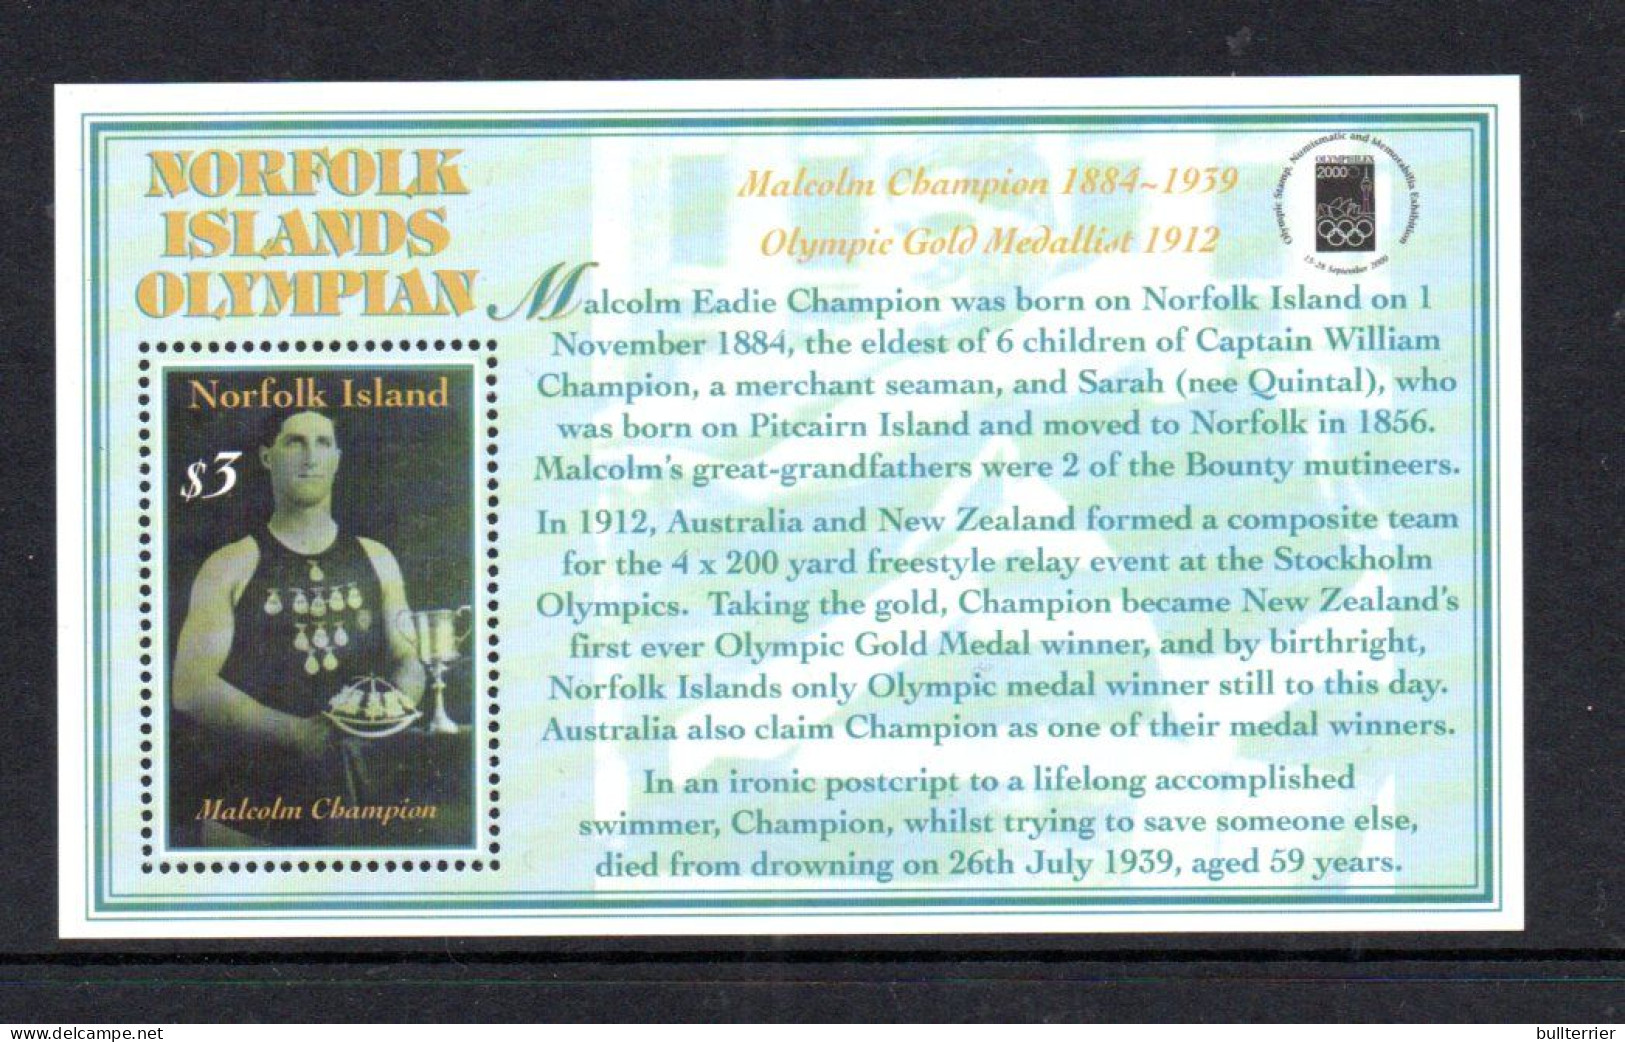 OLYMPICS - Norfolk Island - 2000 - Sydney Olympics Souvenir Sheet   MNH, - Sommer 2000: Sydney